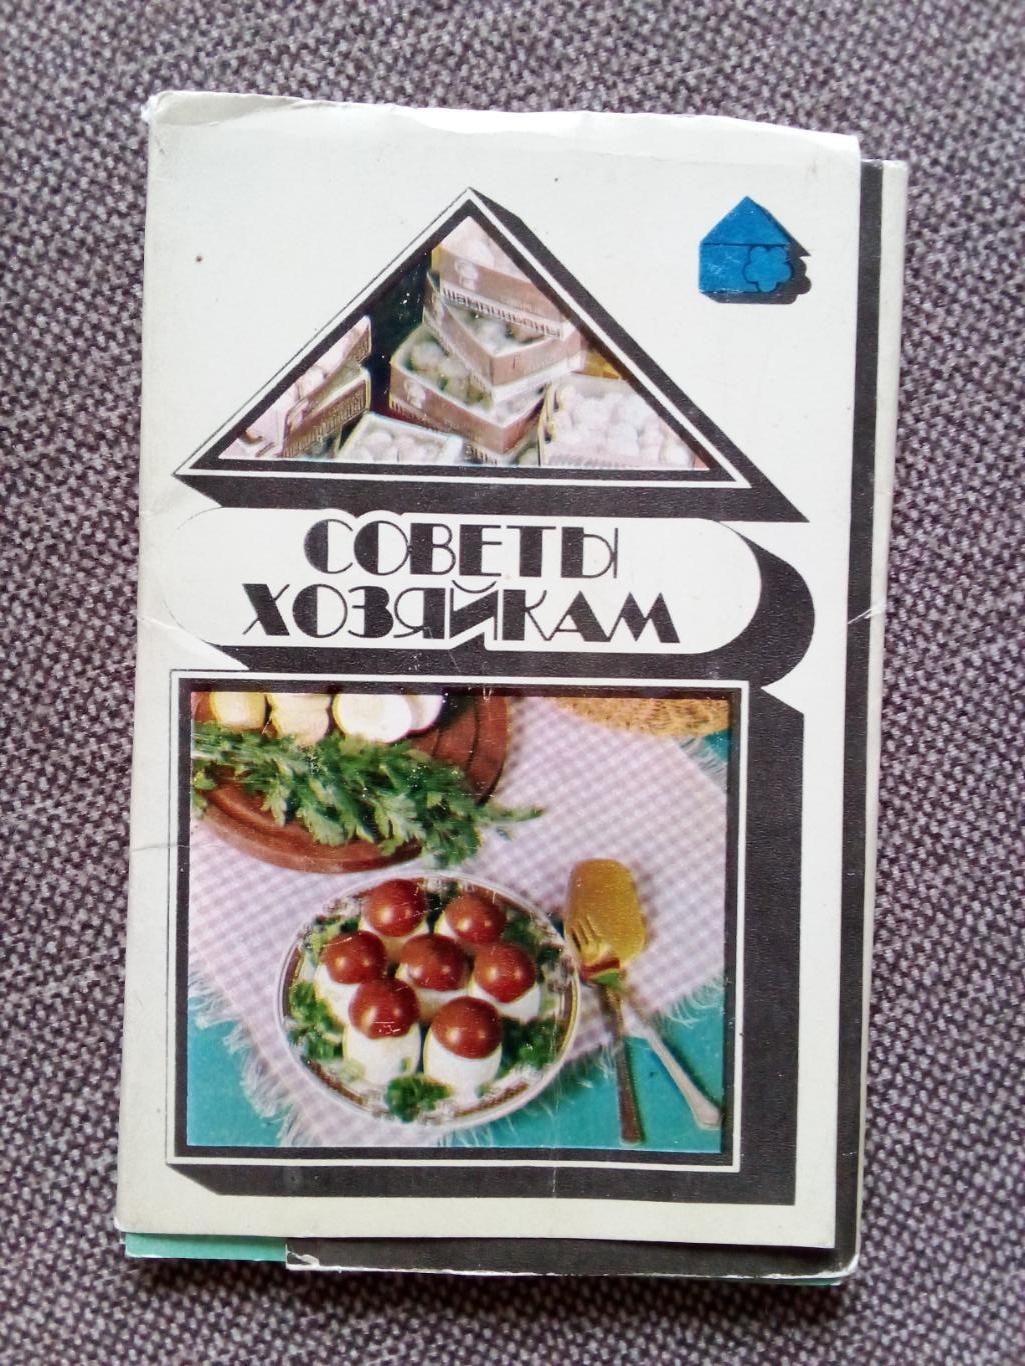 Советы хозяйкам - Блюда из шампиньонов 1985 г. полный набор - 15 открыток